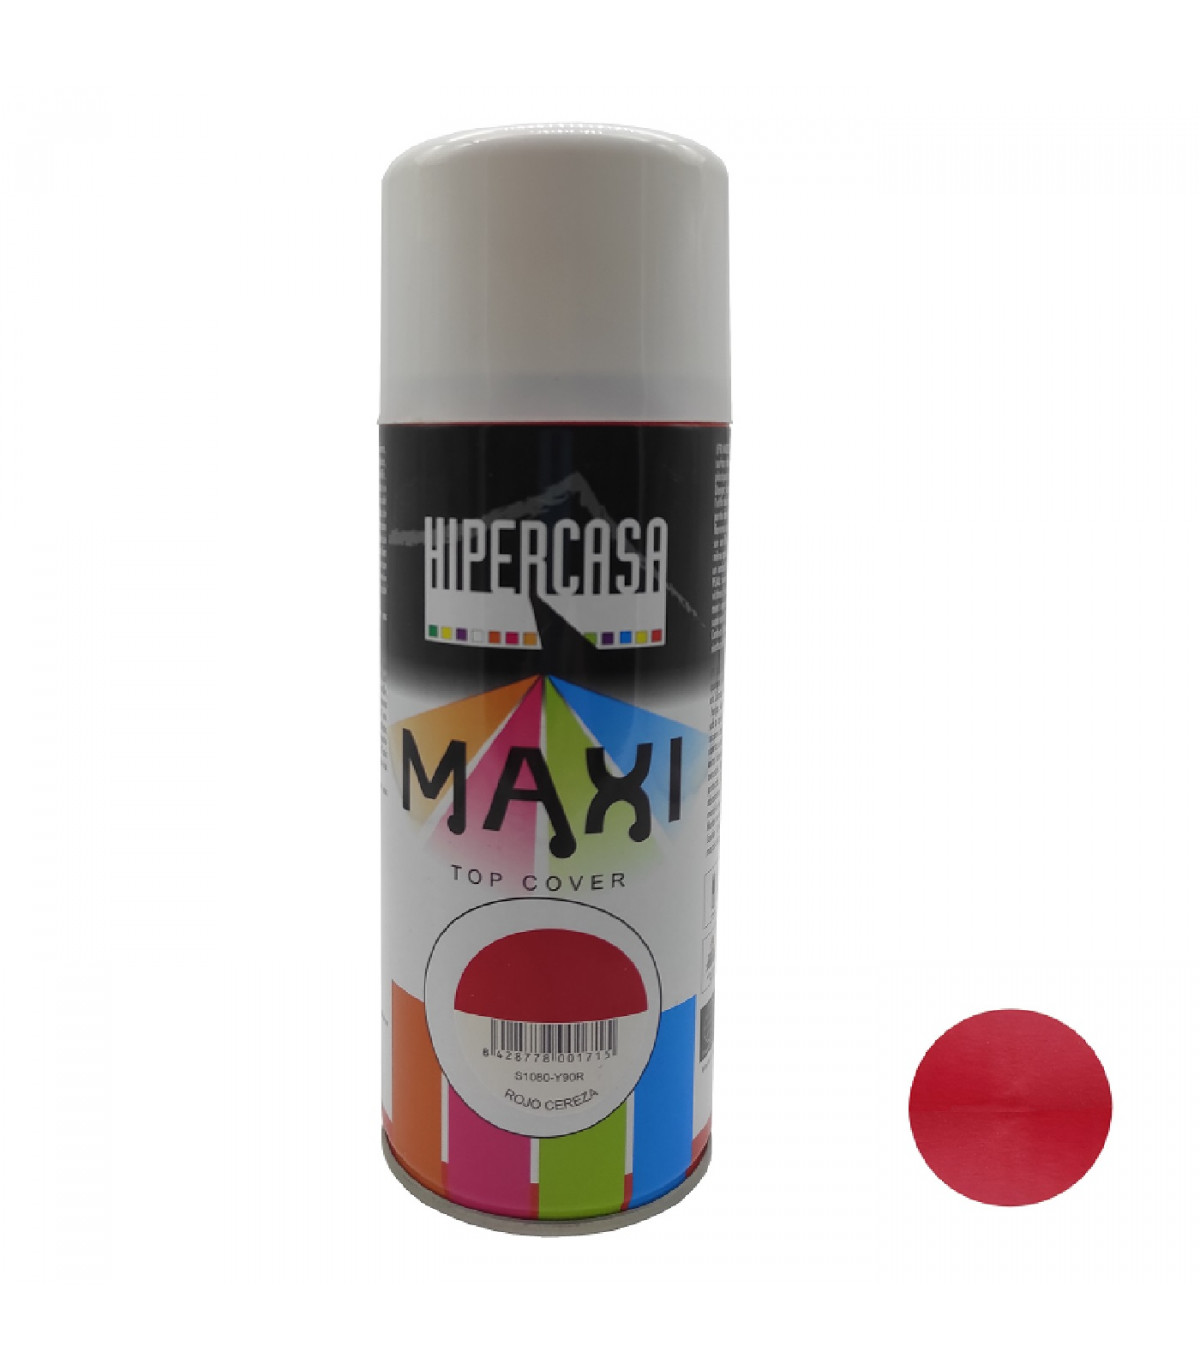 cuadrado Distribución Minúsculo Hipercasa - Bote de pintura en spray color rojo cereza 400 ml, válido para  multitud de superficies de interior y exterior